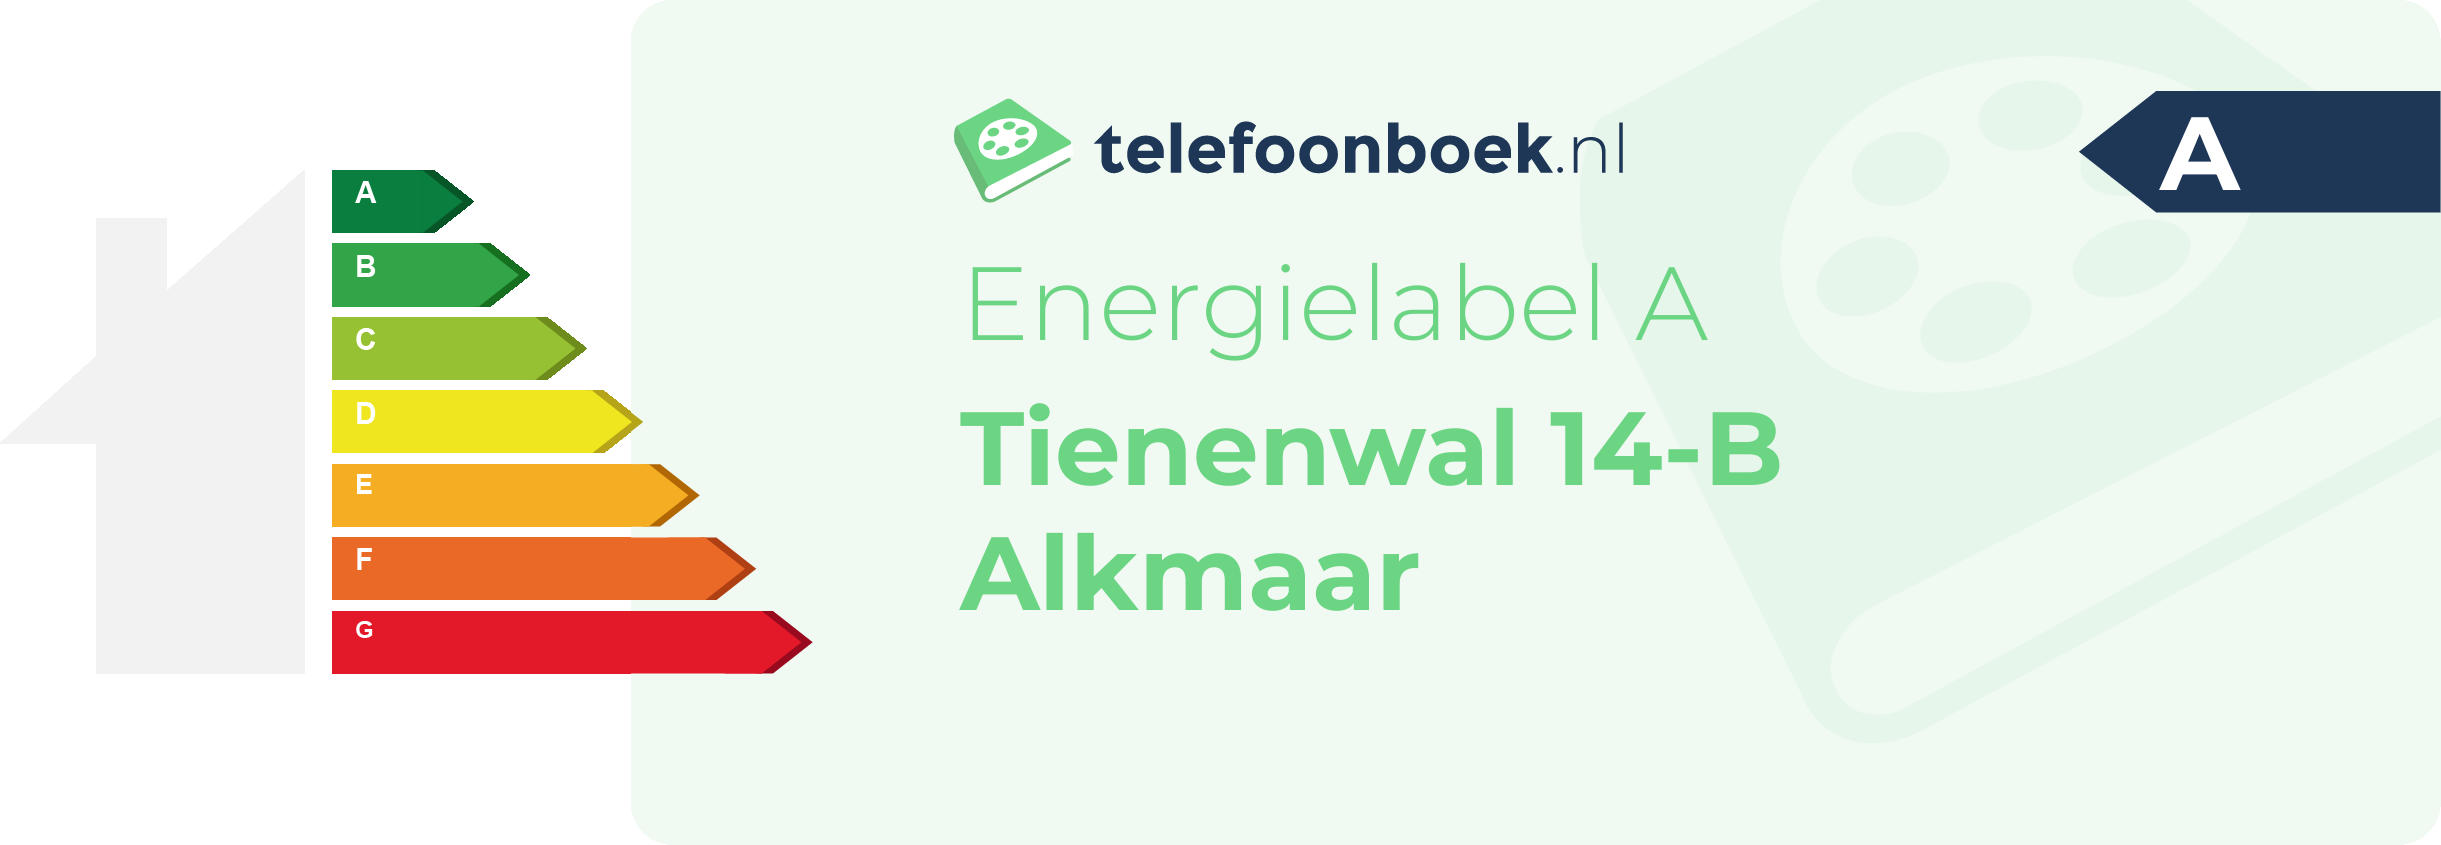 Energielabel Tienenwal 14-B Alkmaar